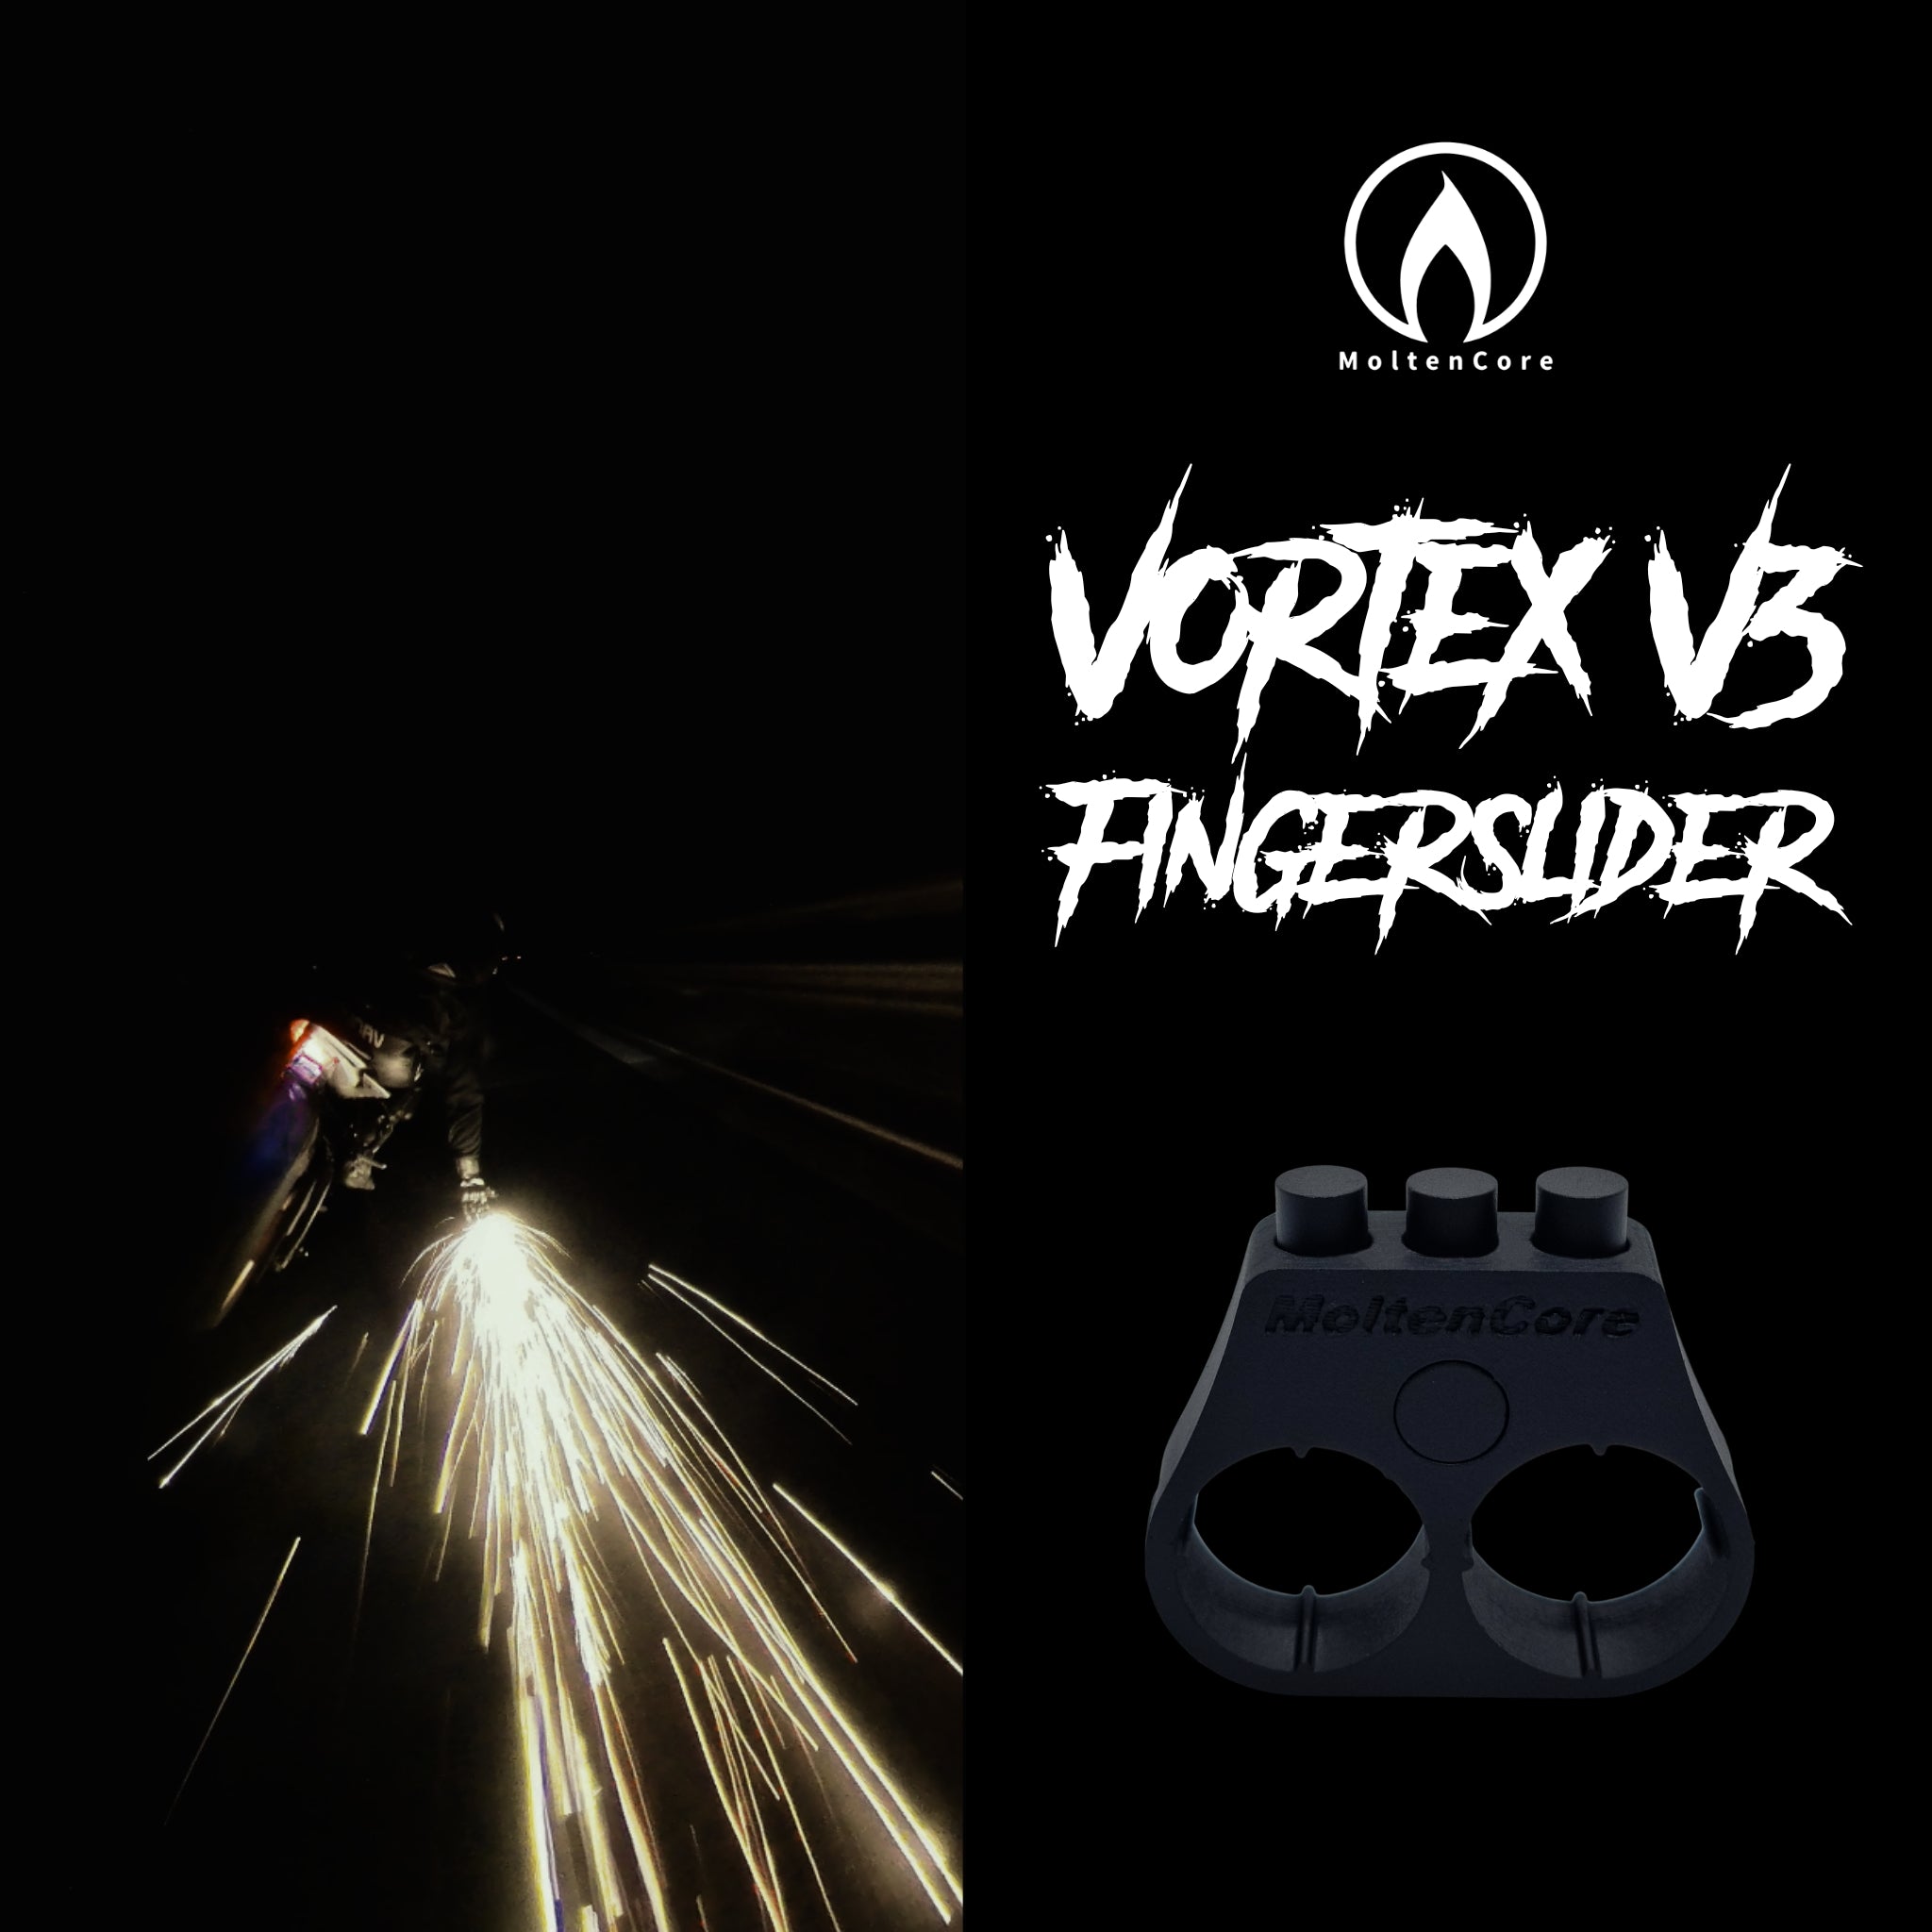 VortexV3 Fingerslider